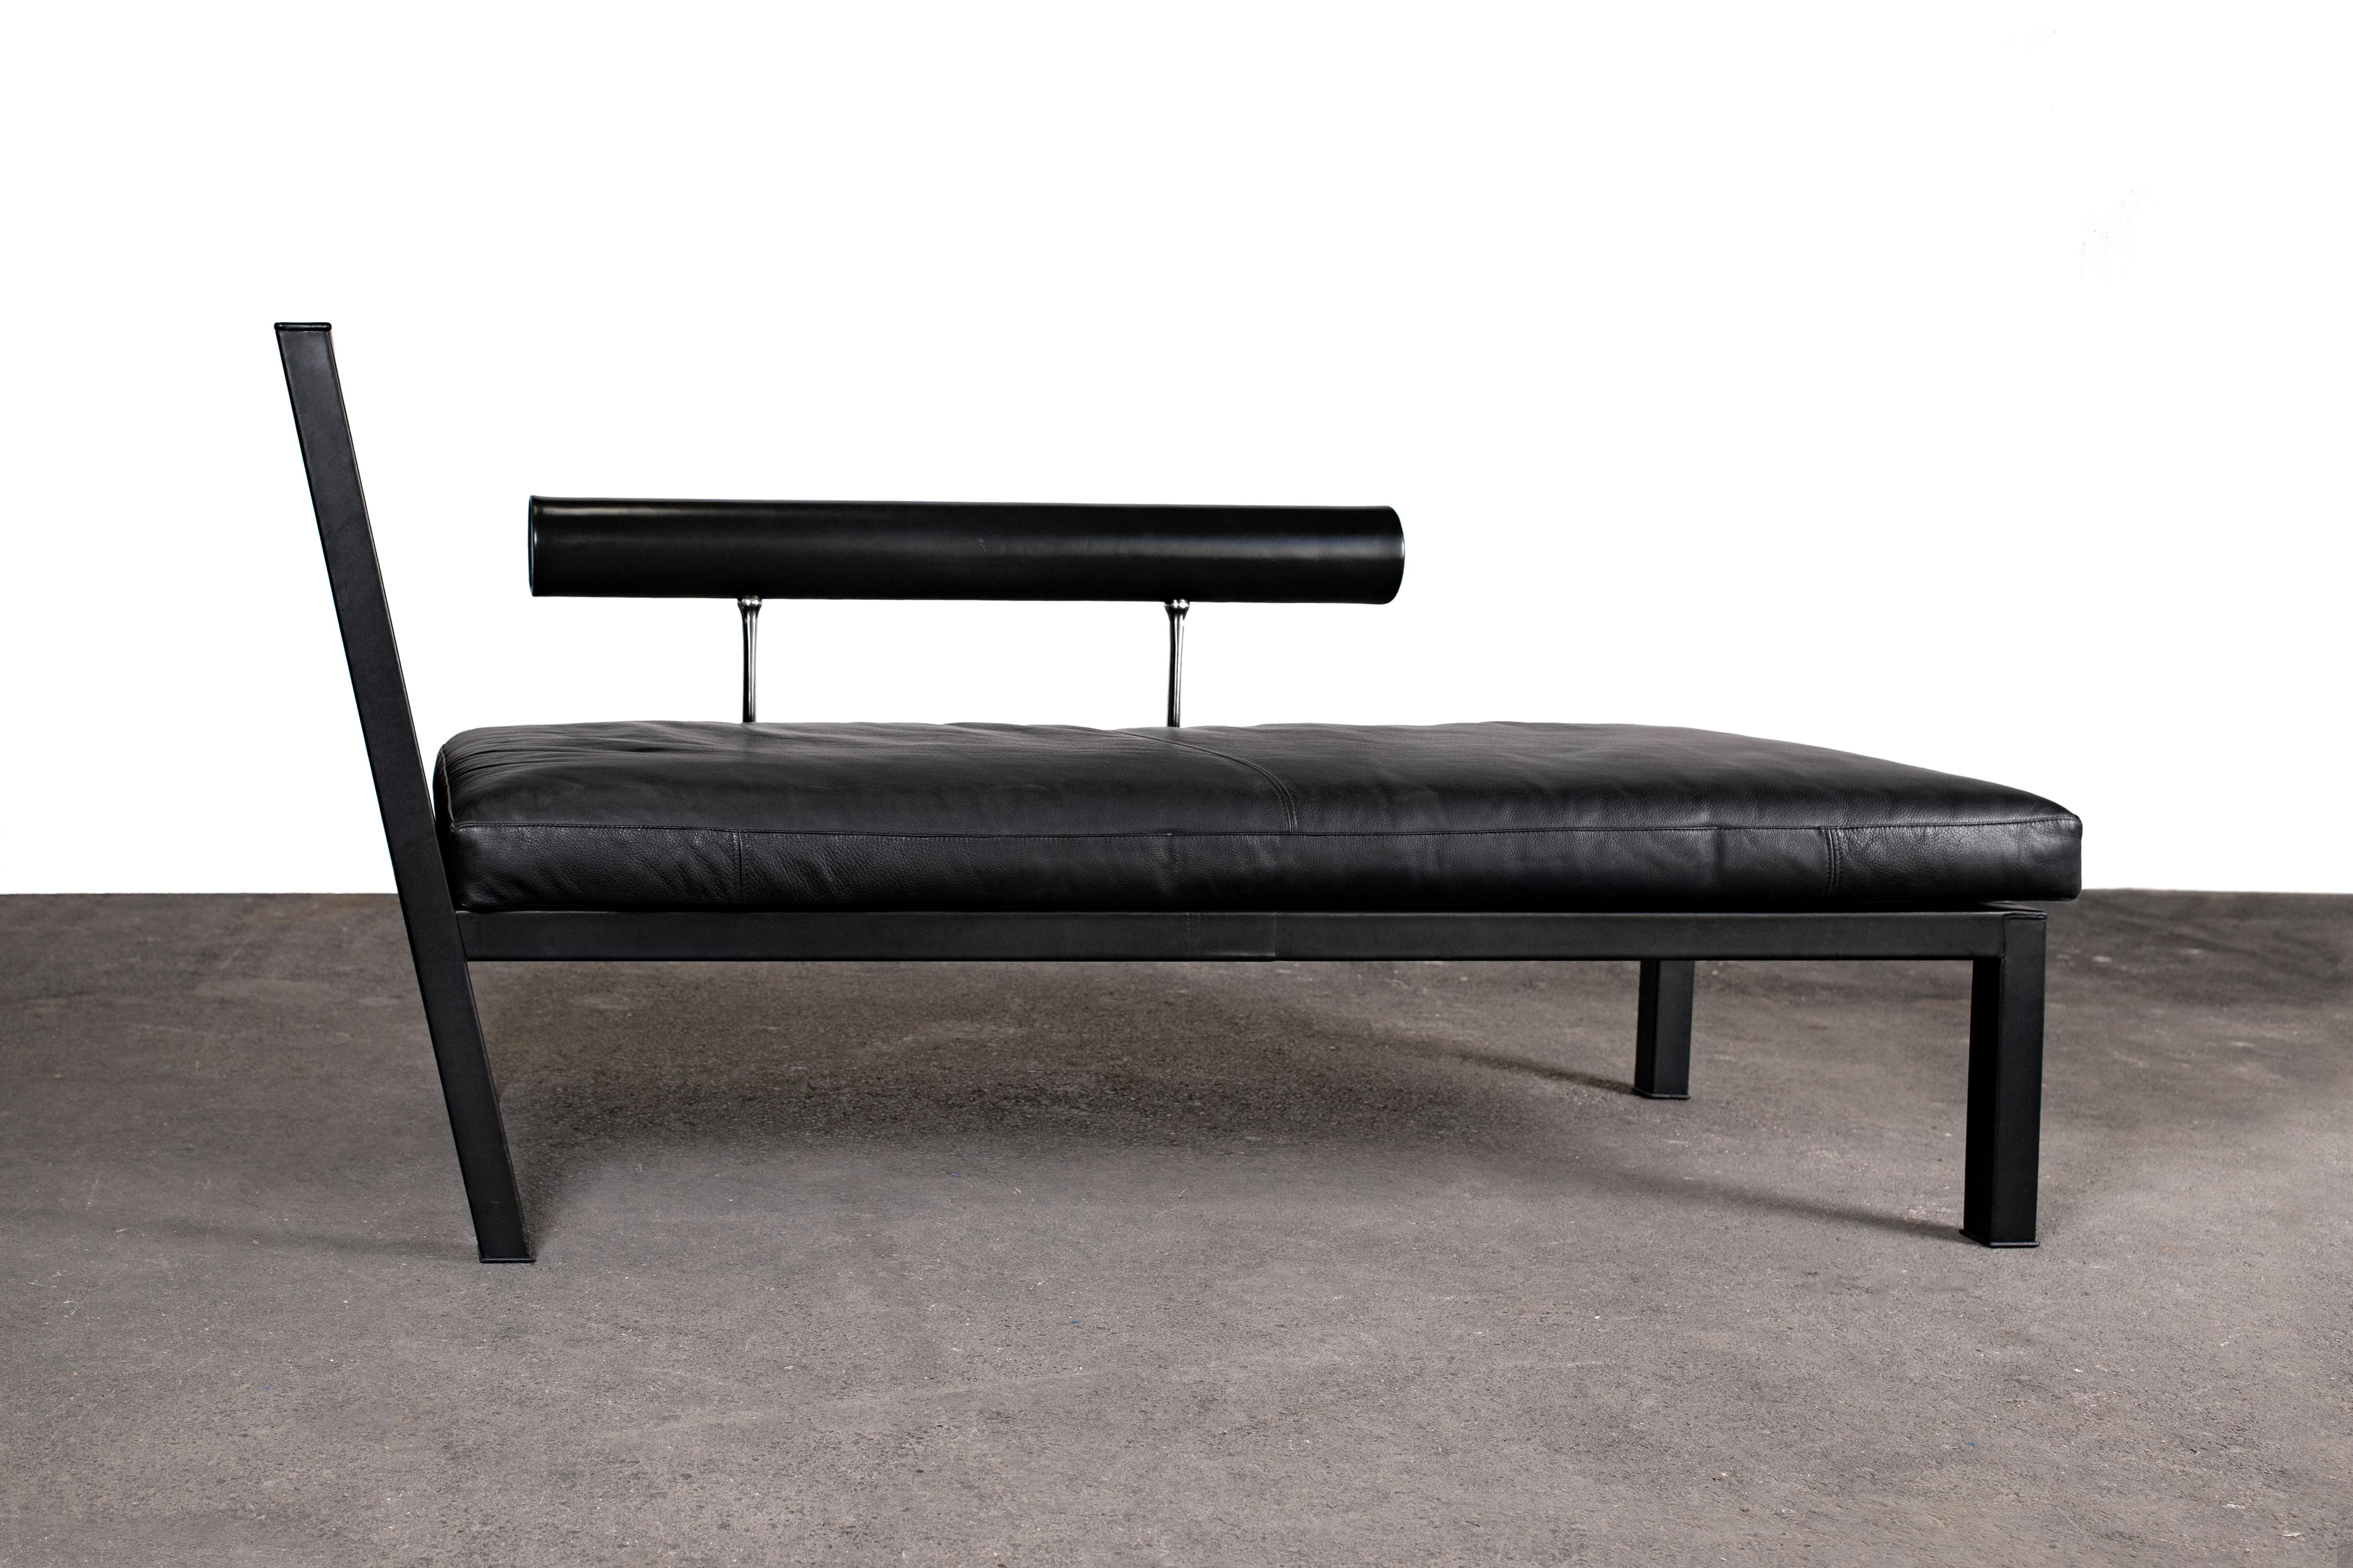 Chaise longue chic et élégante d'Antonio Citterio pour B&B Italia. L'une des pièces les plus désirables et les plus rares de la gamme Sity de 1986.

Cette pièce est fabriquée avec un cadre en acier recouvert de cuir noir. Accoudoir tubulaire en